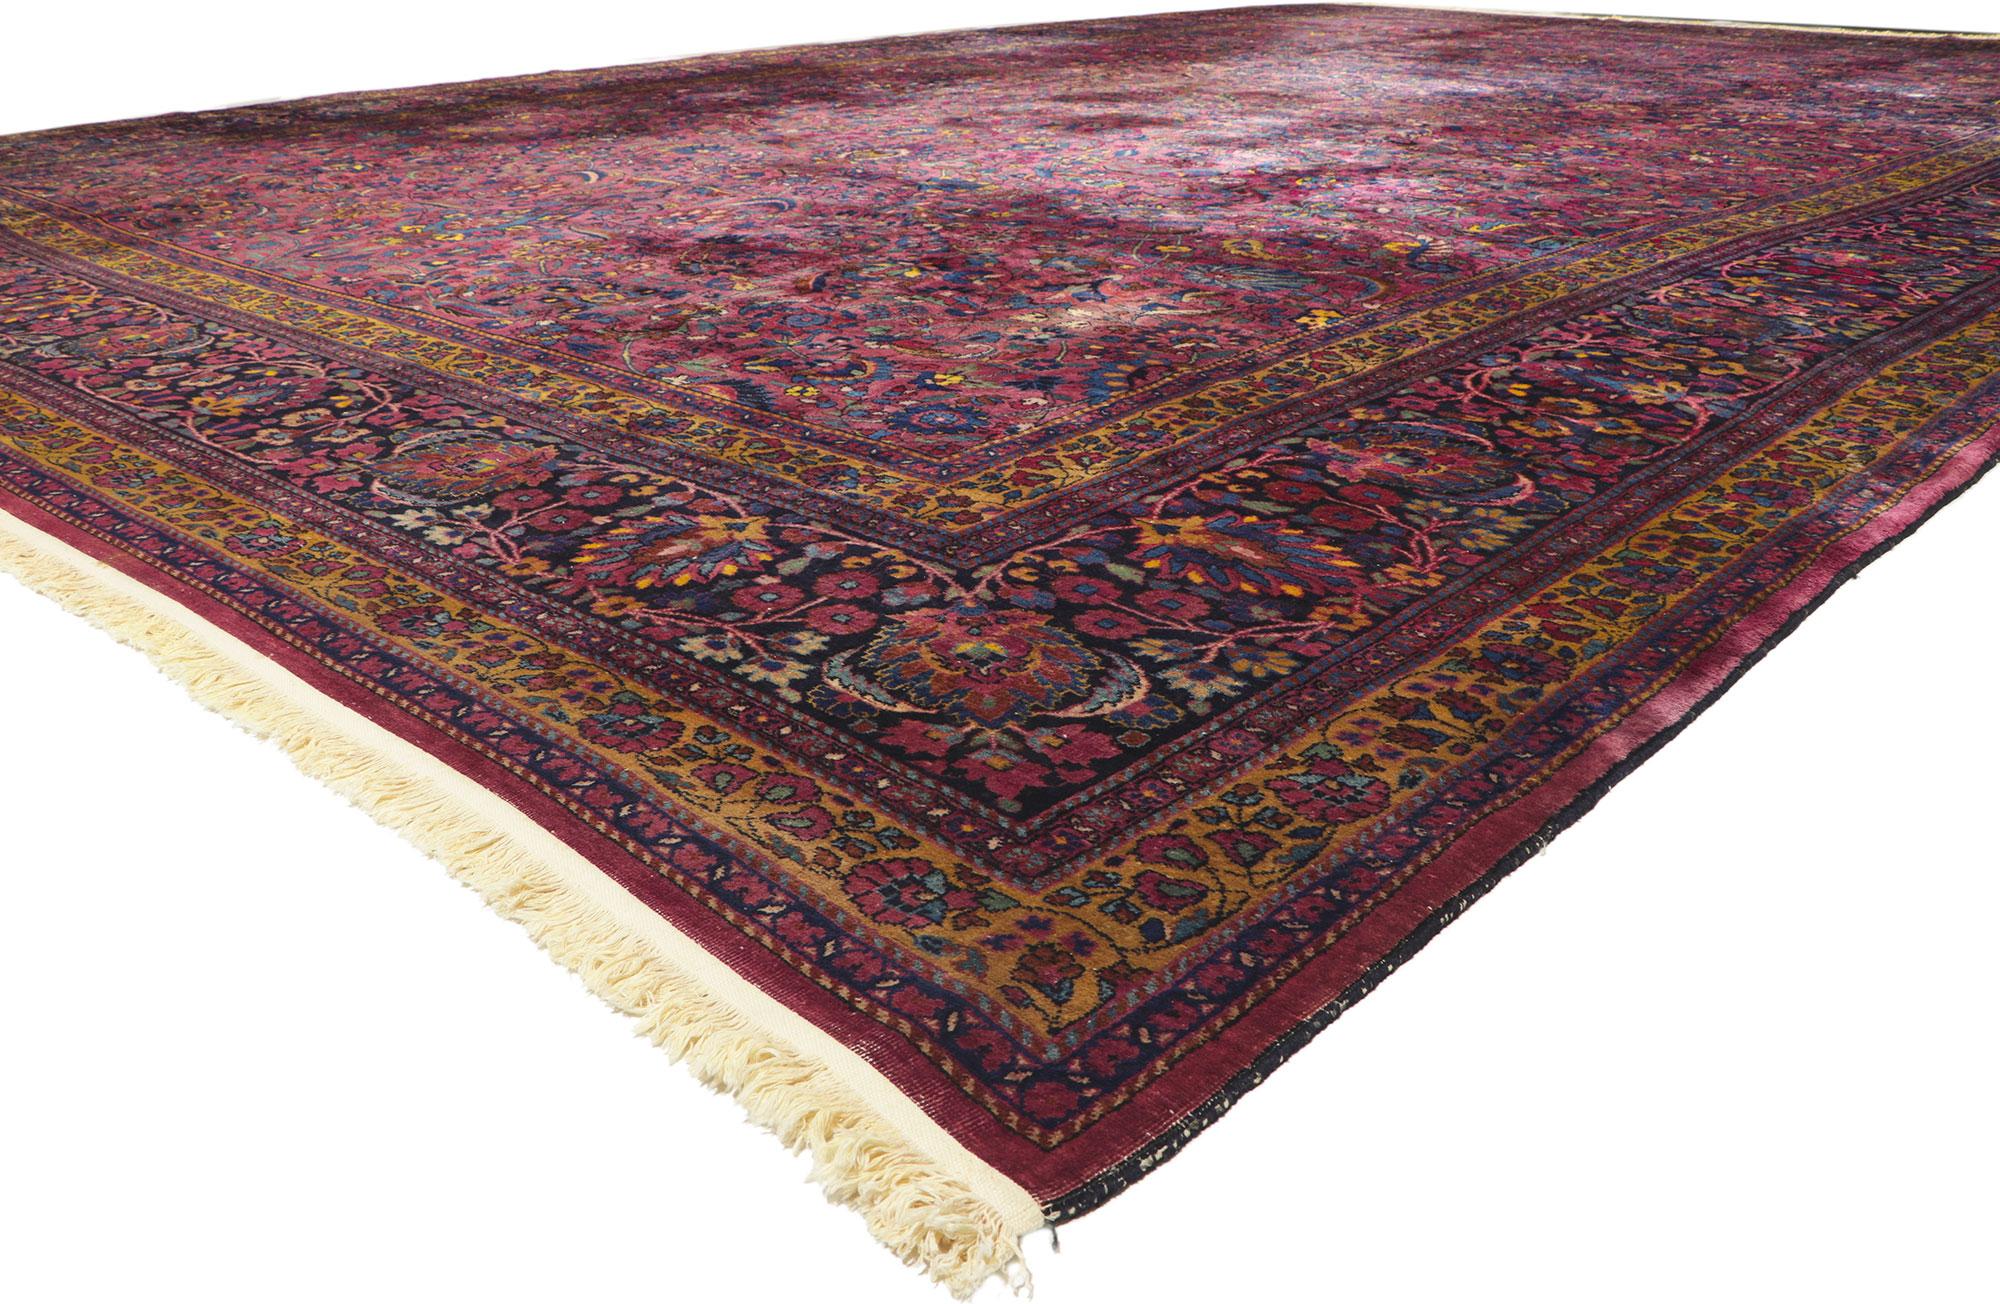 78355 Antique Persian Mashhad Rug, 15'03 x 23'09.
Avec sa beauté sans effort et son attrait intemporel, ce tapis persan ancien en laine nouée à la main s'intègre parfaitement aux intérieurs modernes, contemporains et traditionnels. Le motif